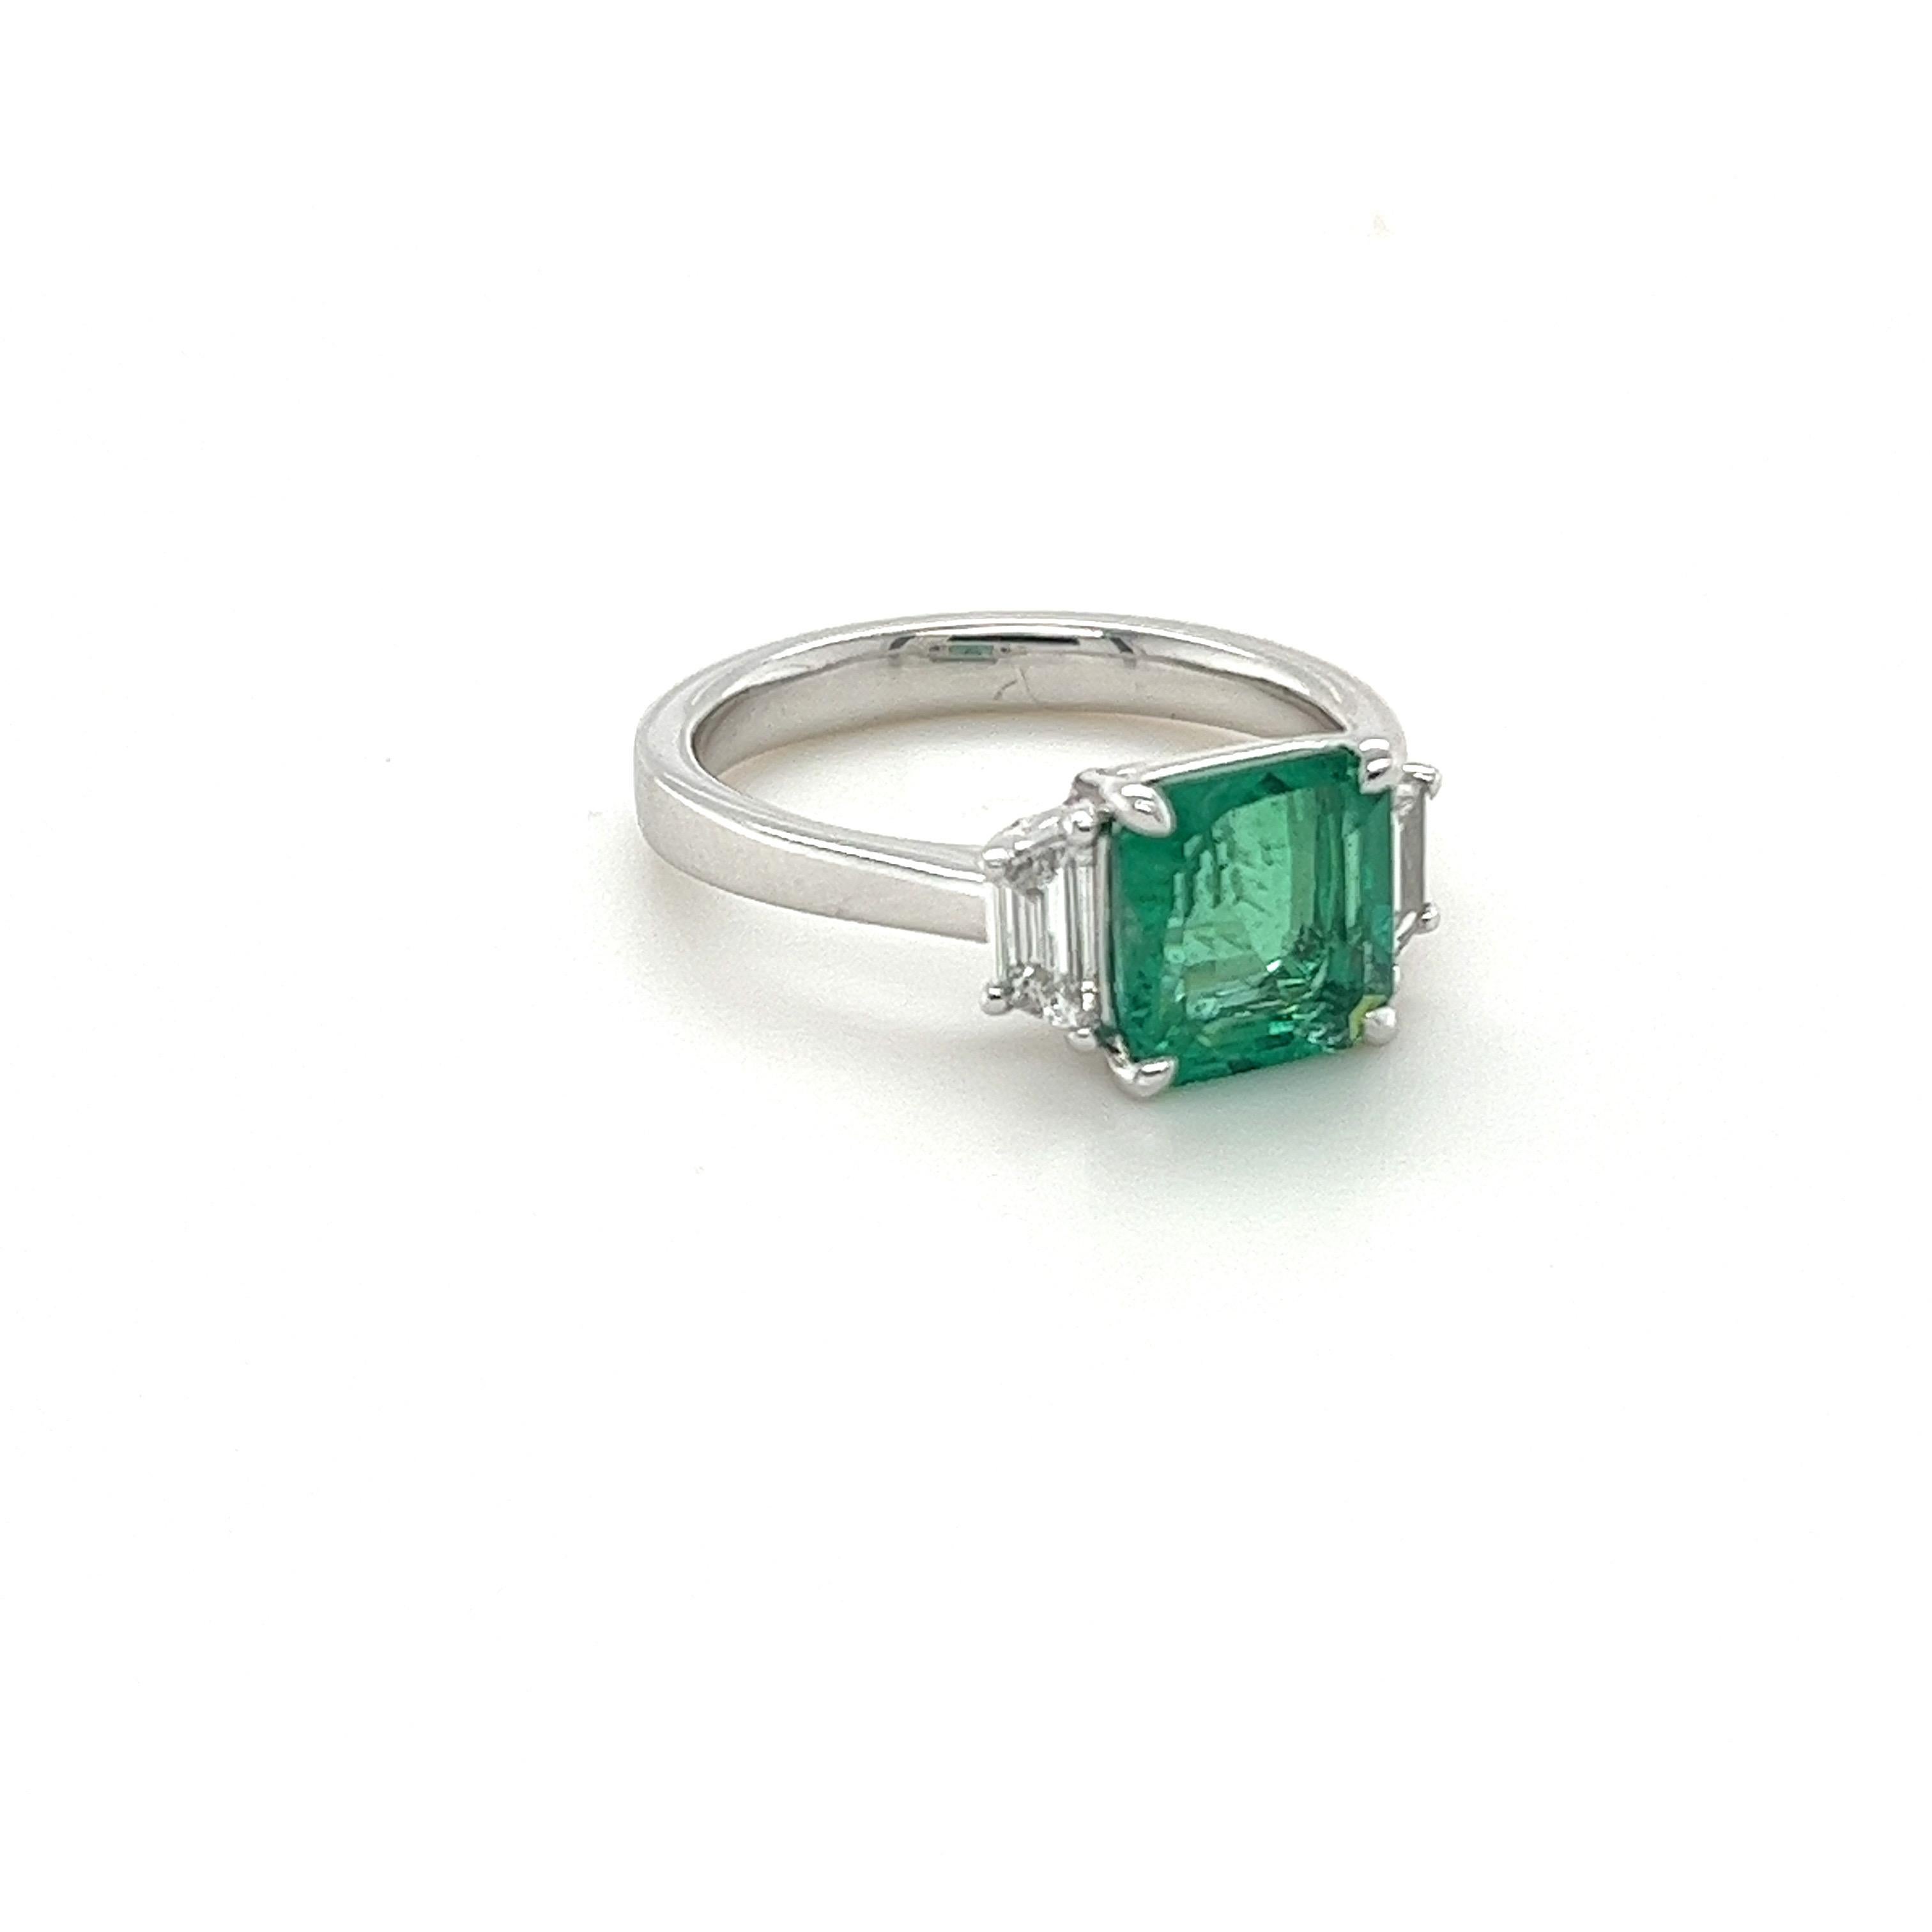 GIA-zertifizierter Smaragd im Smaragdschliff mit einem Gewicht von 2.20 Karat
Abmessungen (8,12x7,64x4,88) mm
Diamanten mit einem Gewicht von 0,35 Karat
G-VS2
In Platin gefasst
7.27 g